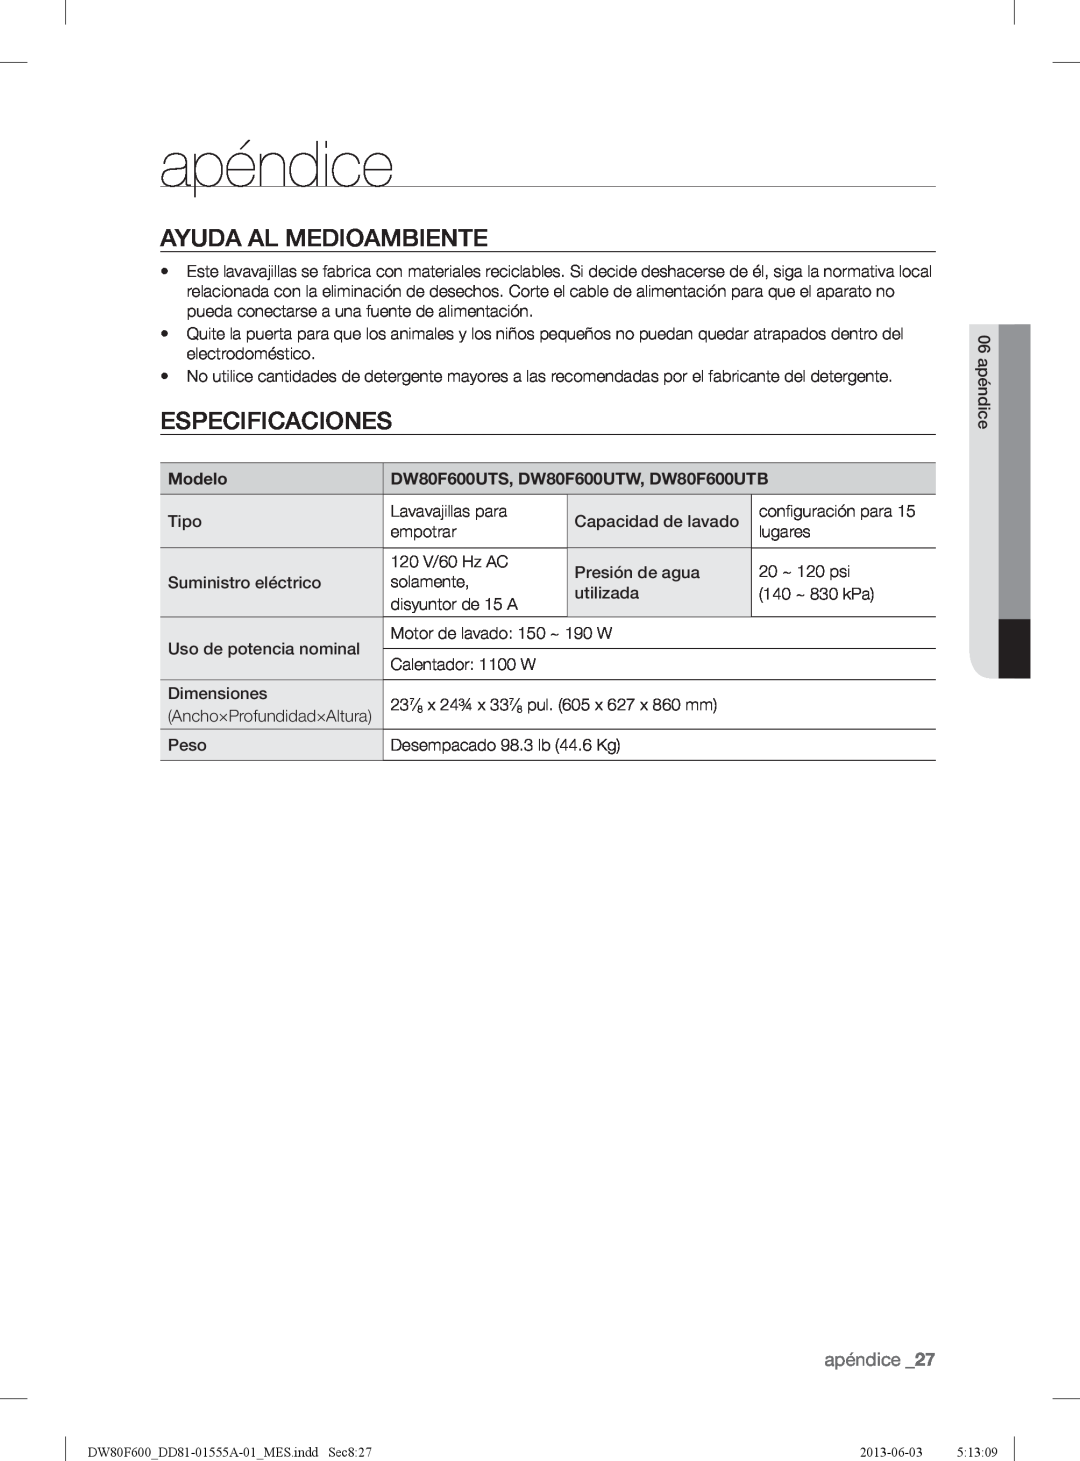 Samsung user manual apéndice, Ayuda Al Medioambiente, Especificaciones, Modelo, DW80F600UTS, DW80F600UTW, DW80F600UTB 